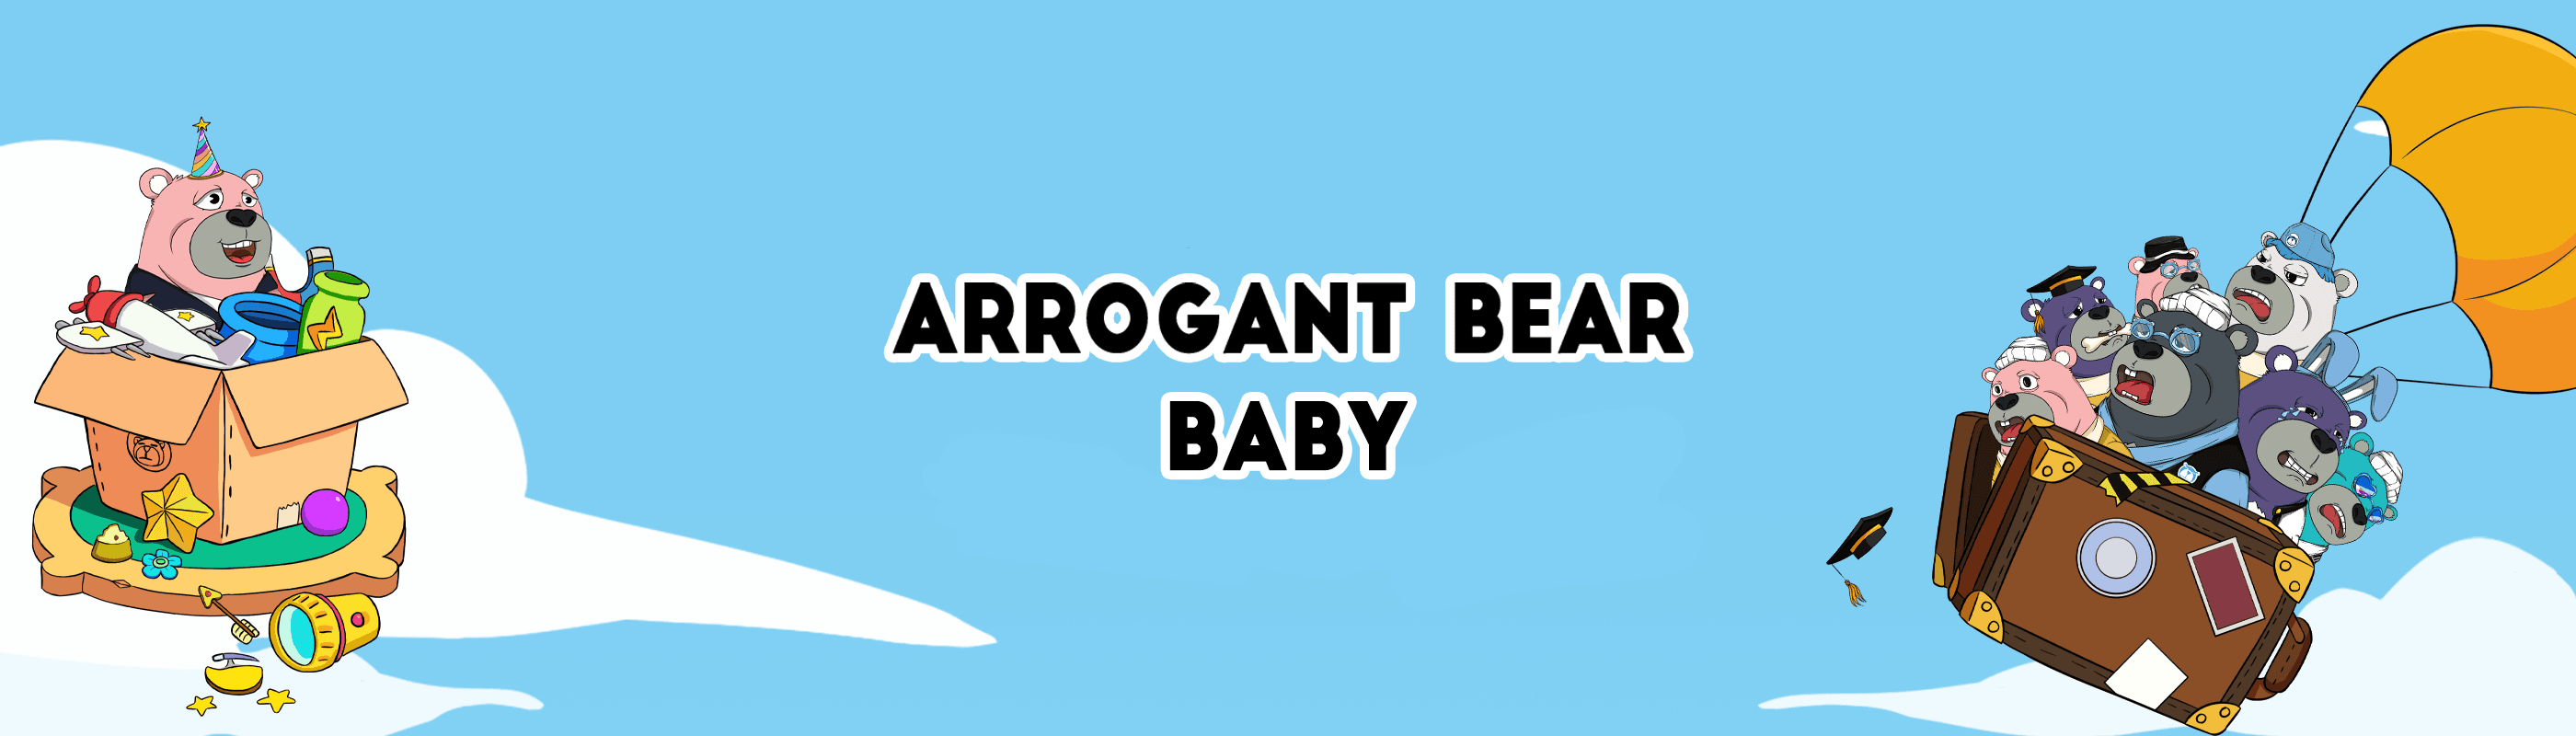 ArrogantBearBaby